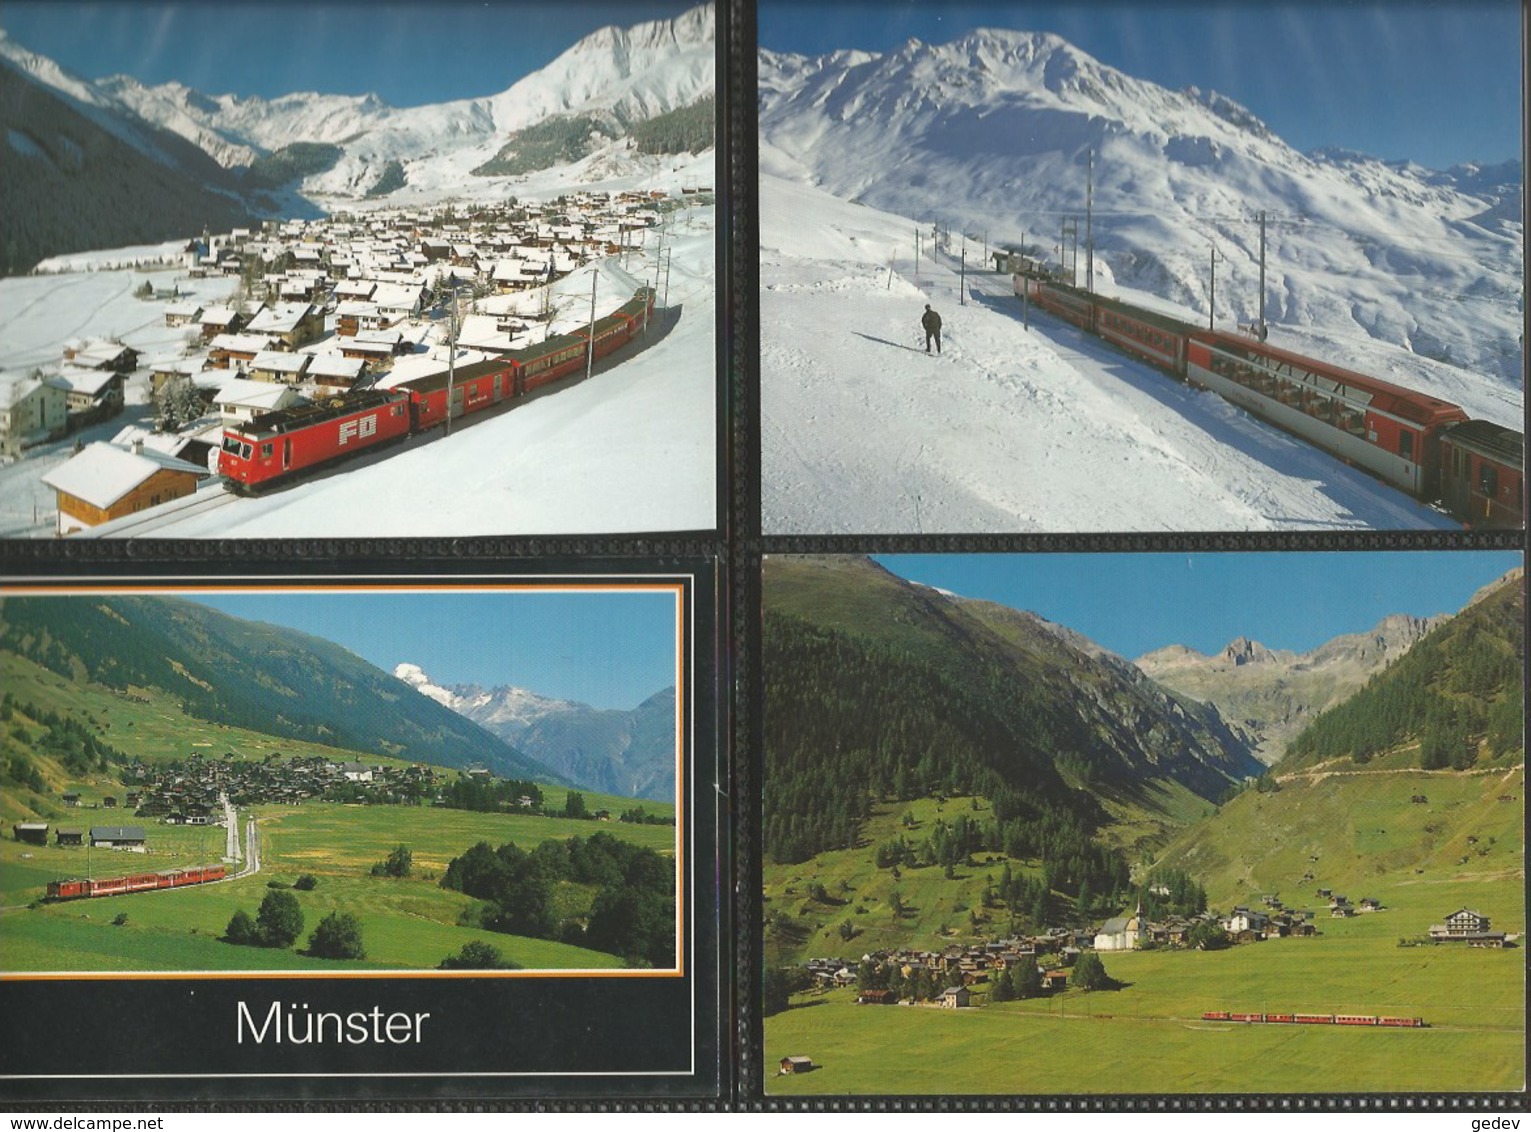 Chemin de Fer Zermatt - St Moritz, Furka-Oberalp-Bahn, Lot de 96 cartes couleurs modernes (3)